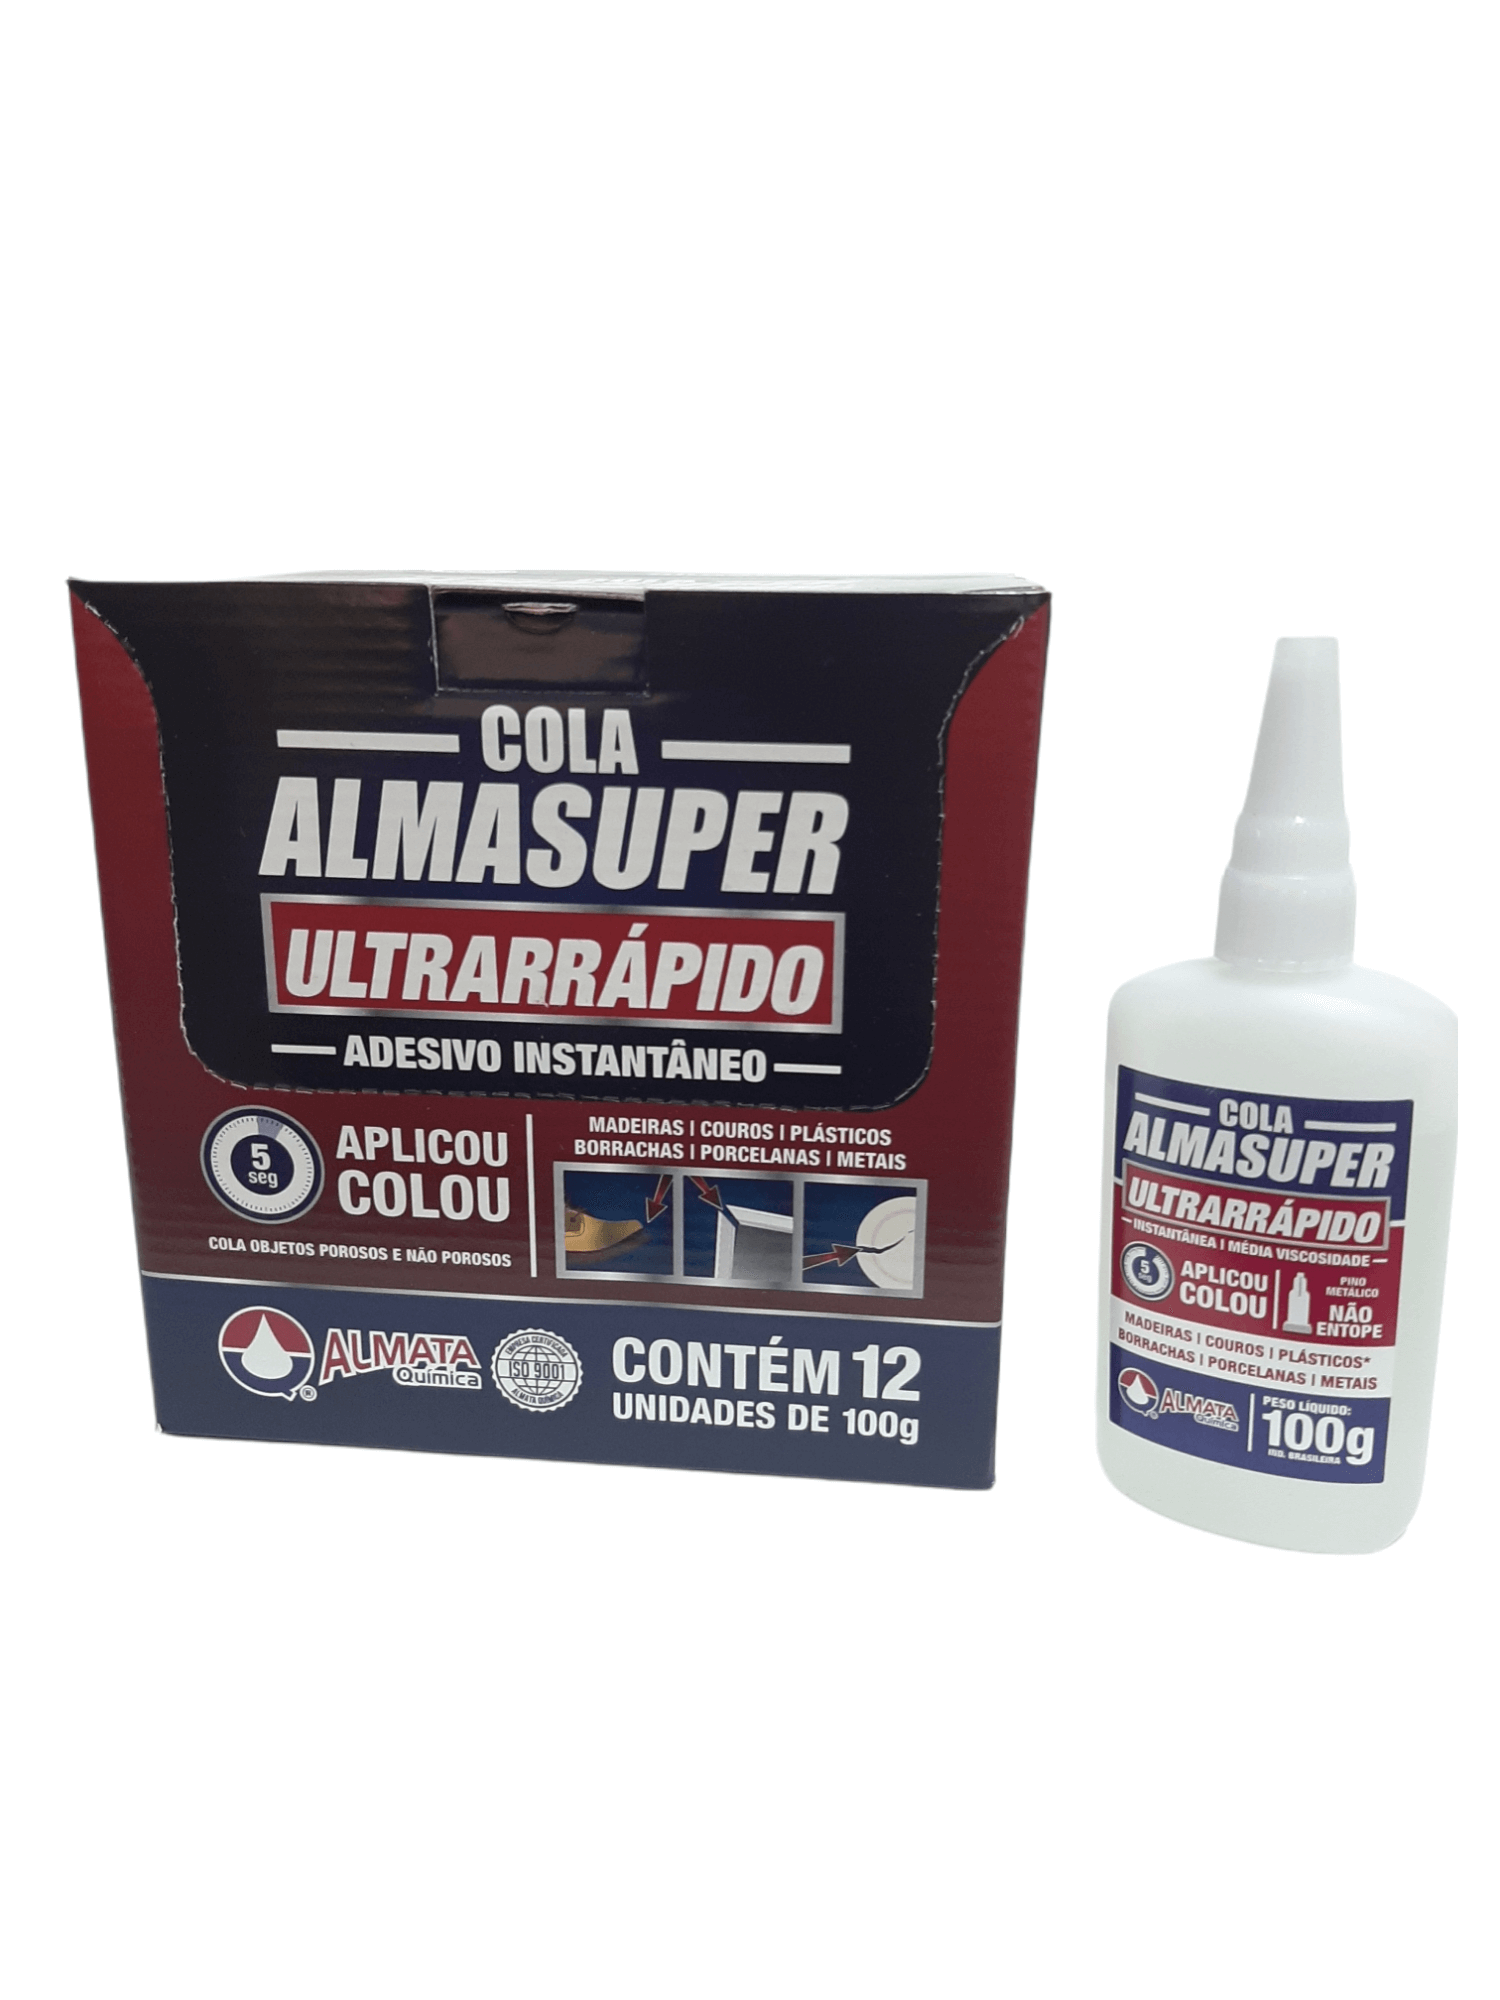 ALMASUPER ULTRARRAPIDO AEP401 100G - 3